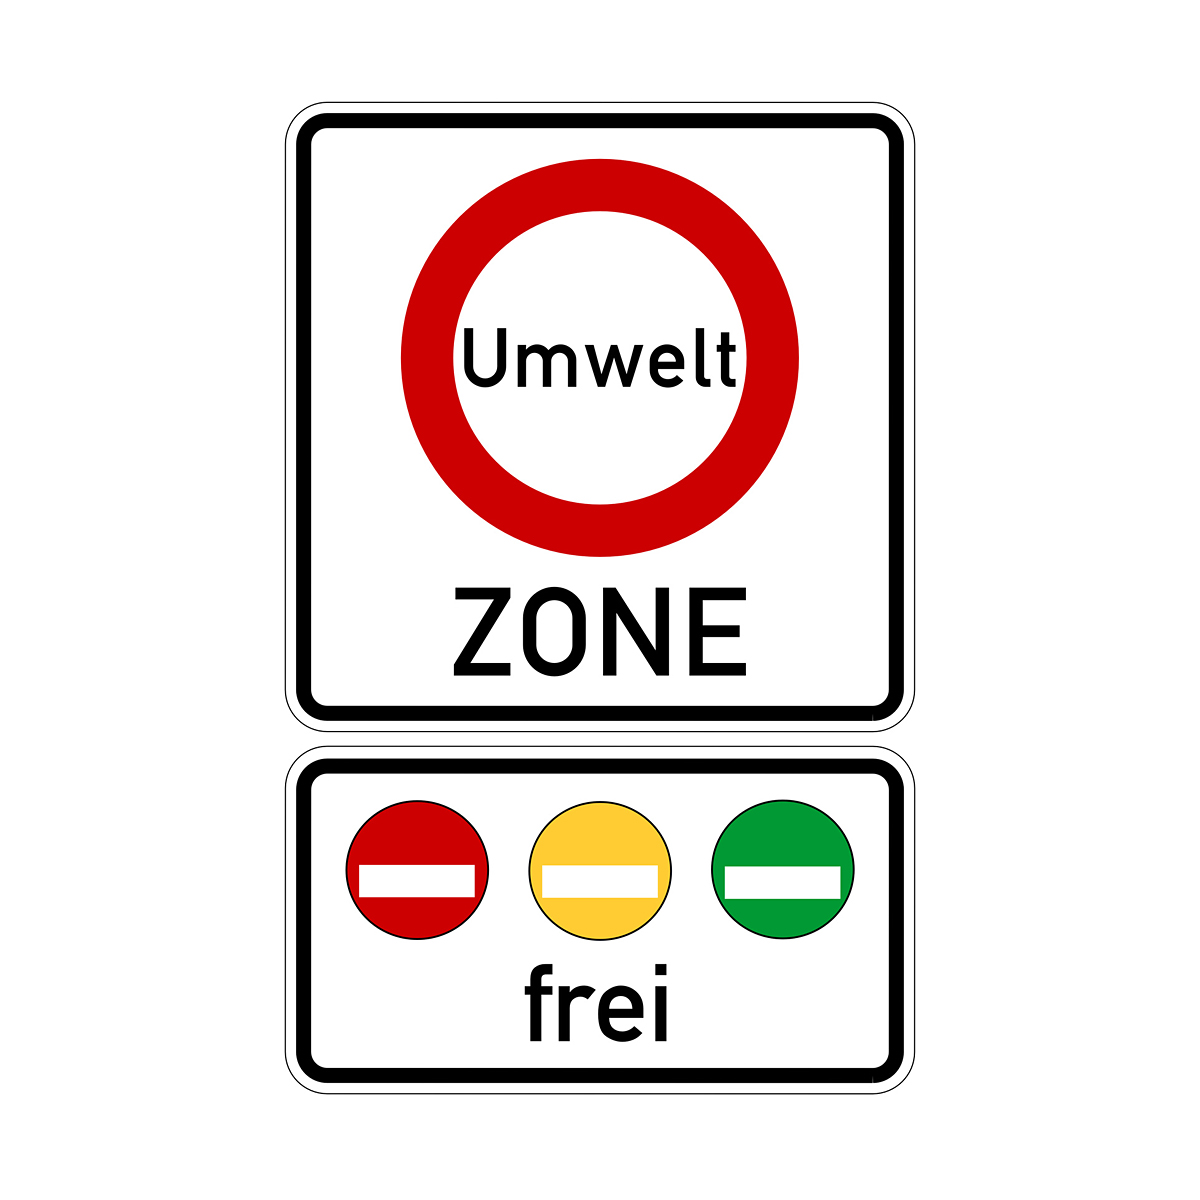 Miljøzone skilt med undertavle, der fortæller at her starter miljøzonen med fri adgang for biler med rød, gul og grønt miljømærke